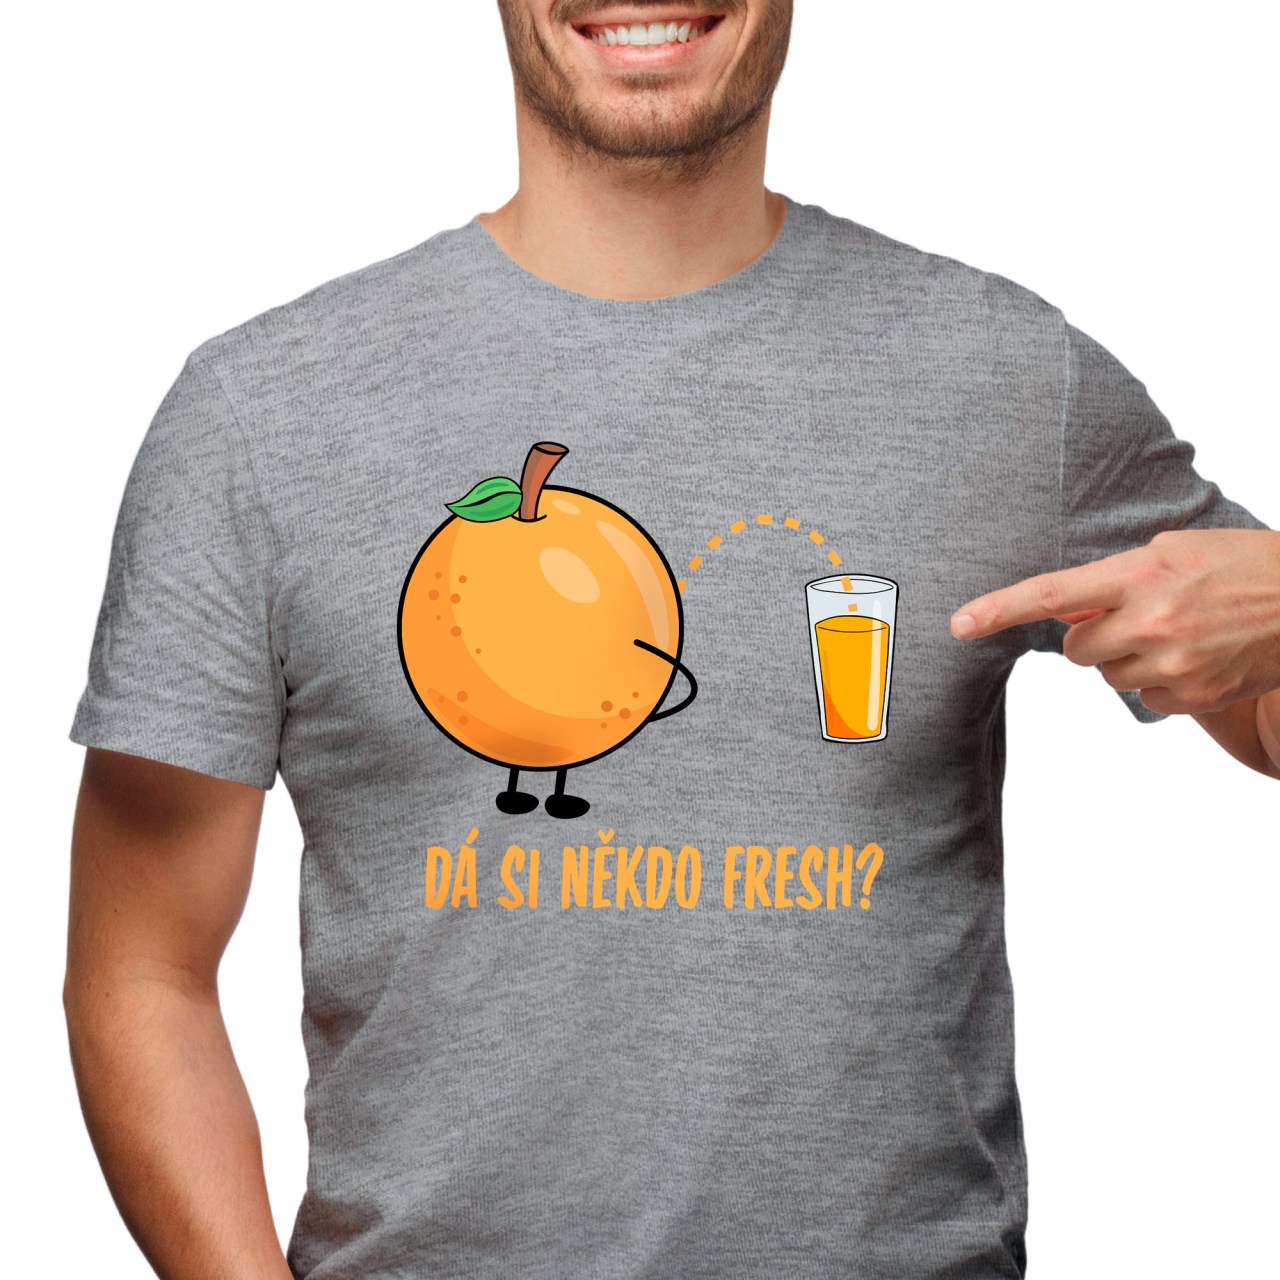 Pánské tričko s potiskem “Dá si někdo fresh?”